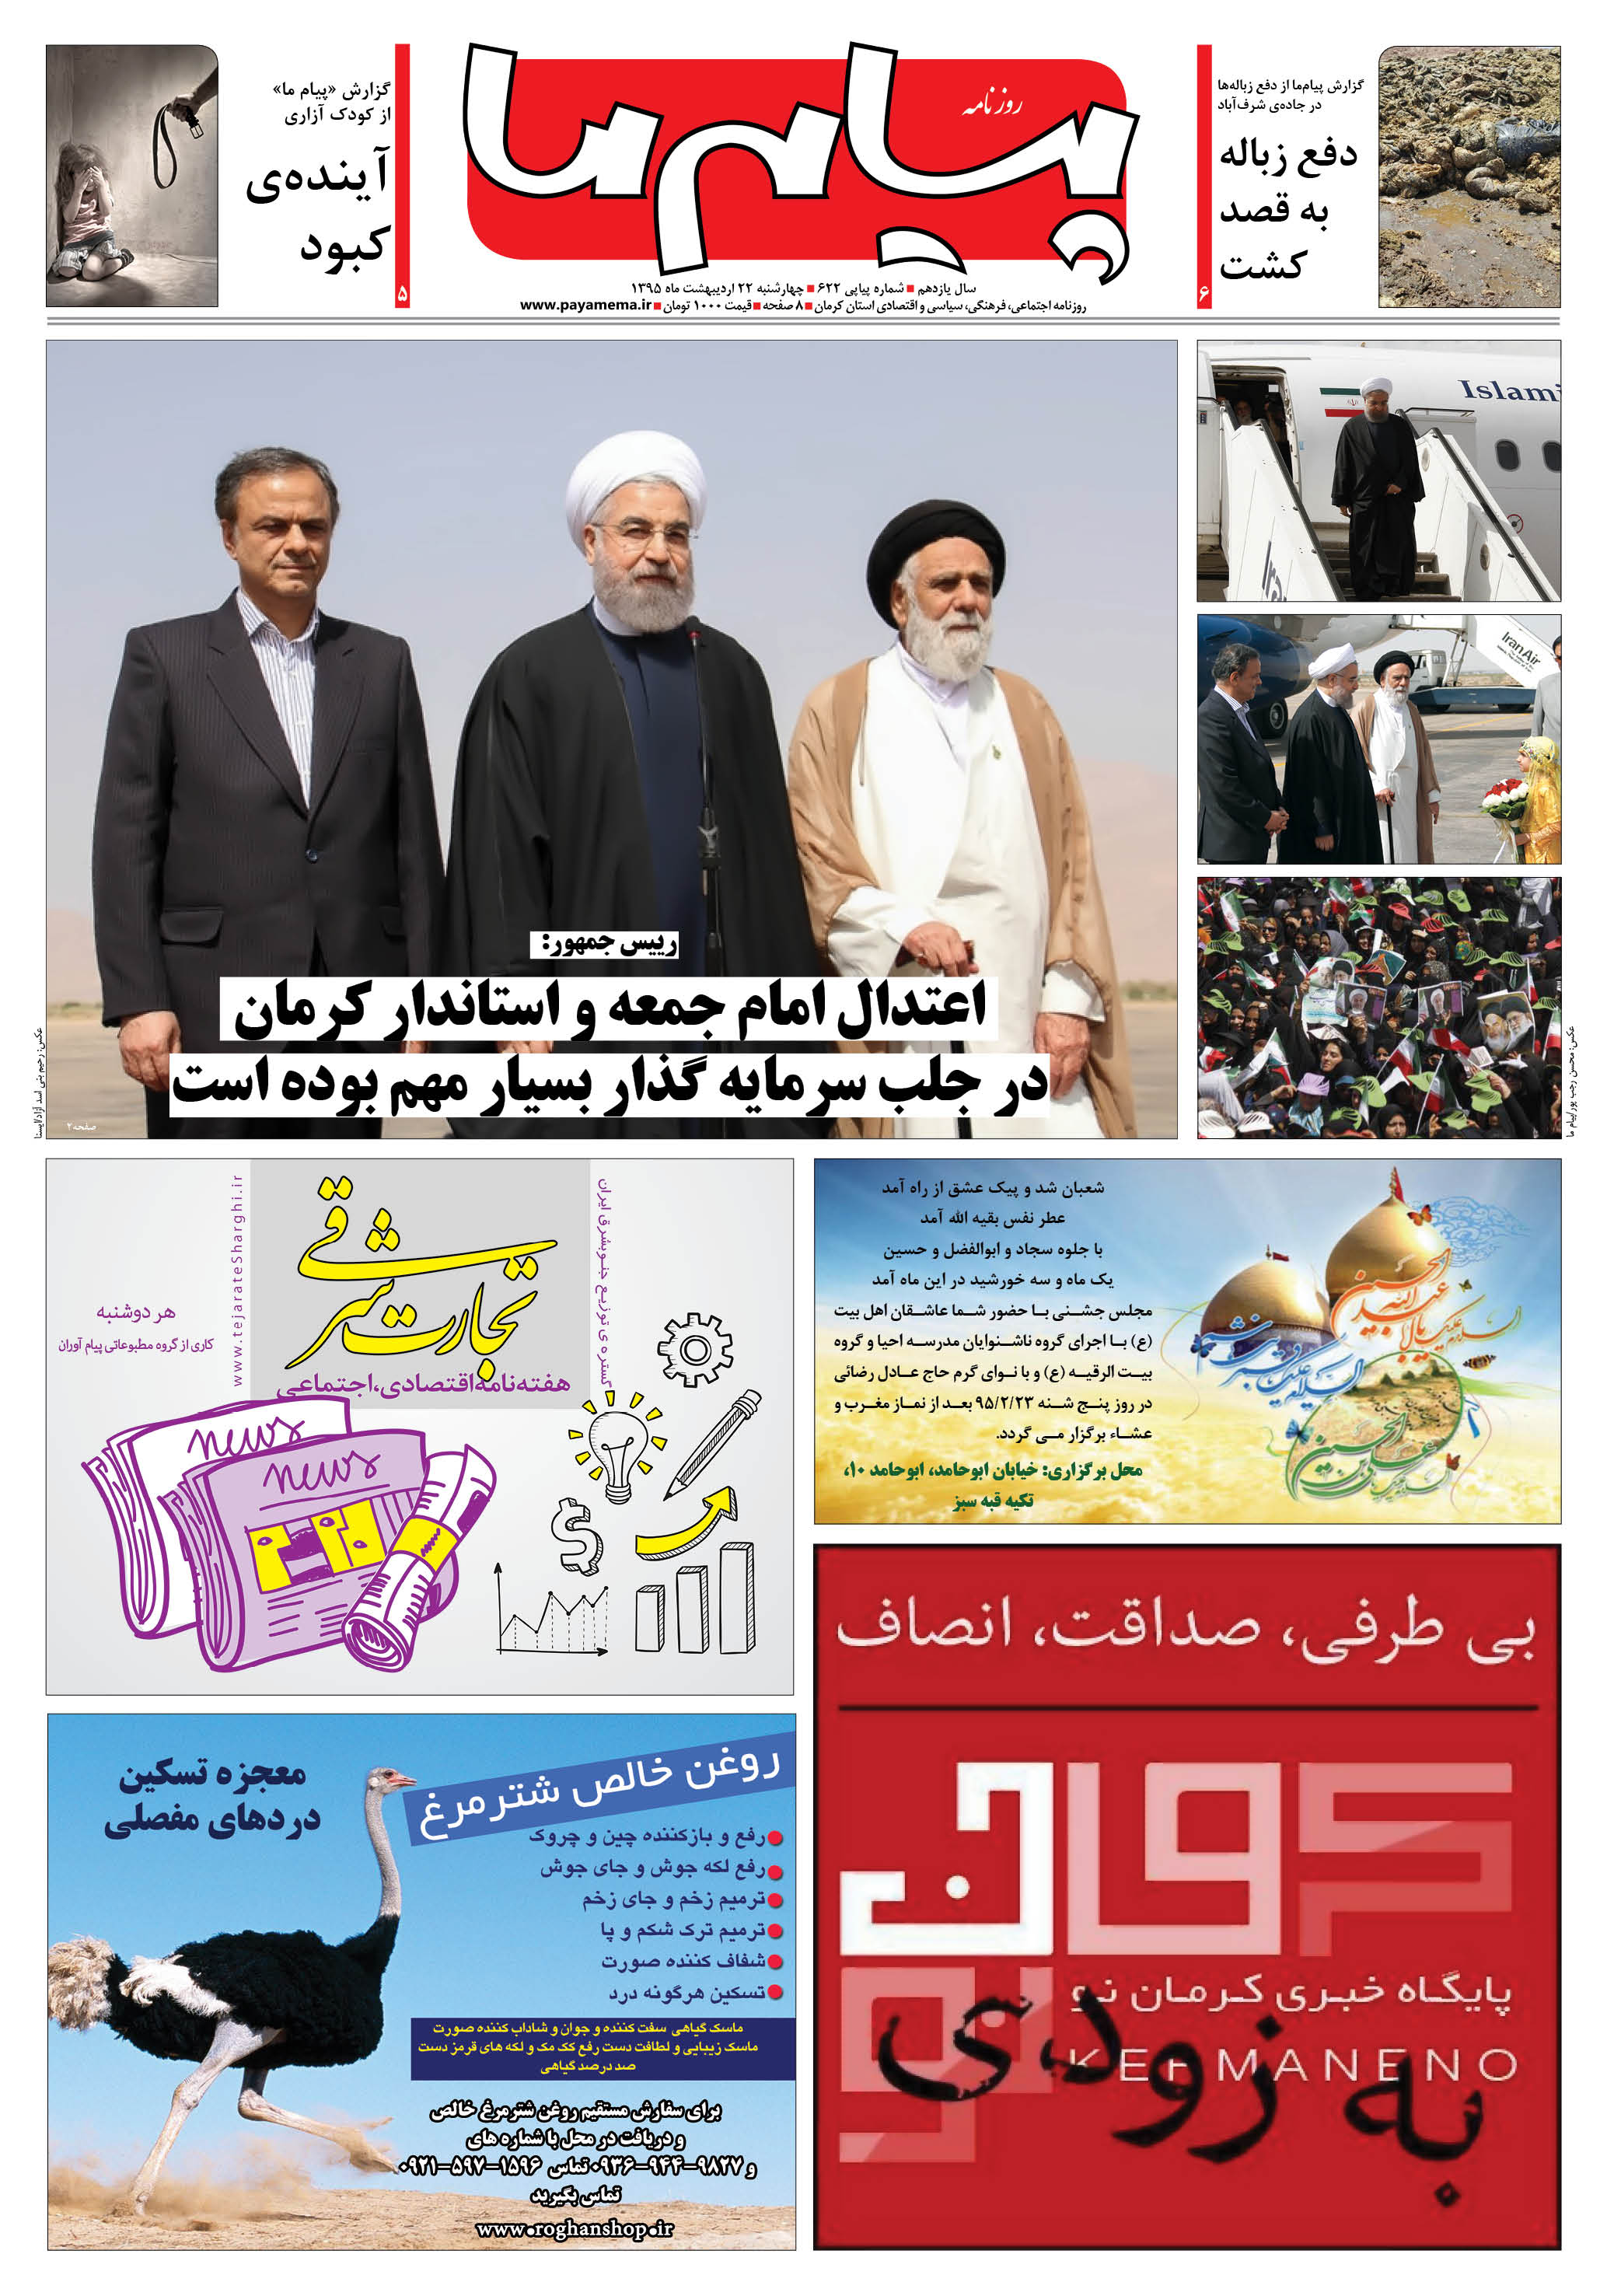 روحانی در جمع مردم کرمان: مردم نه از دولت و نه از مجلس توقع اختلاف ندارند